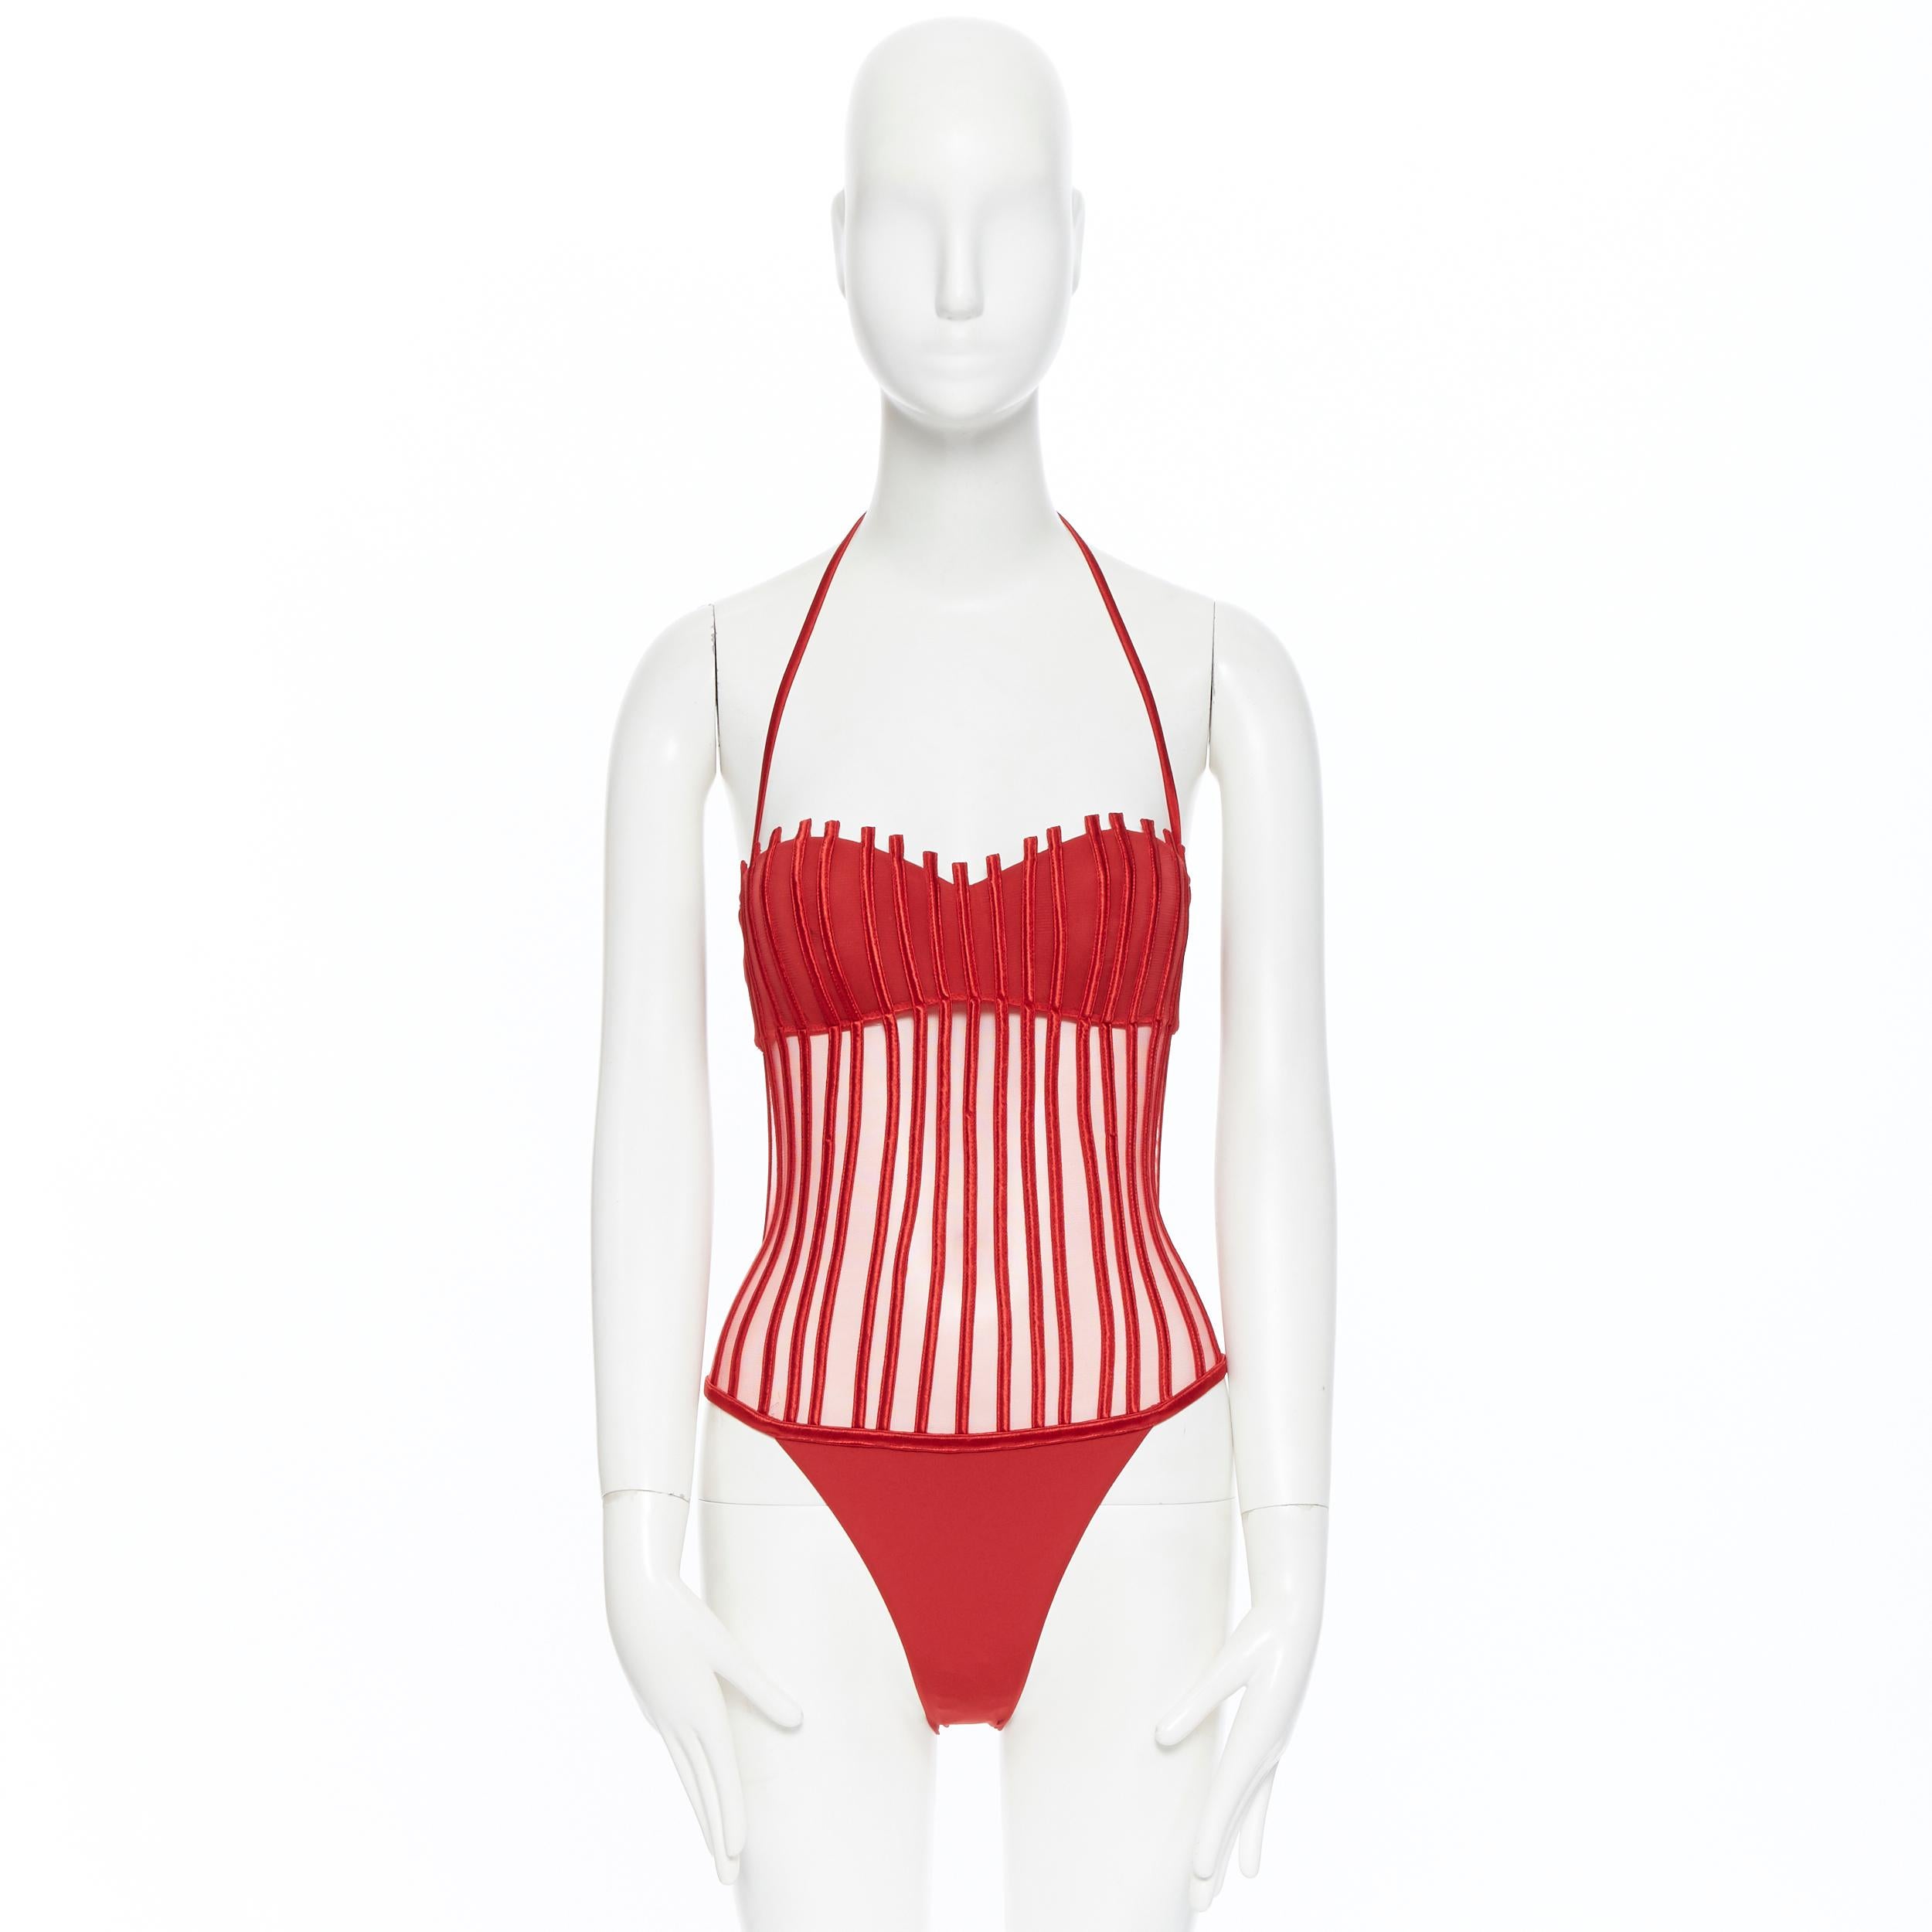 neu LA PERLA Graphique Couture rot entbeint schiere Körper Monokini Badeanzug IT42B S (Rot)